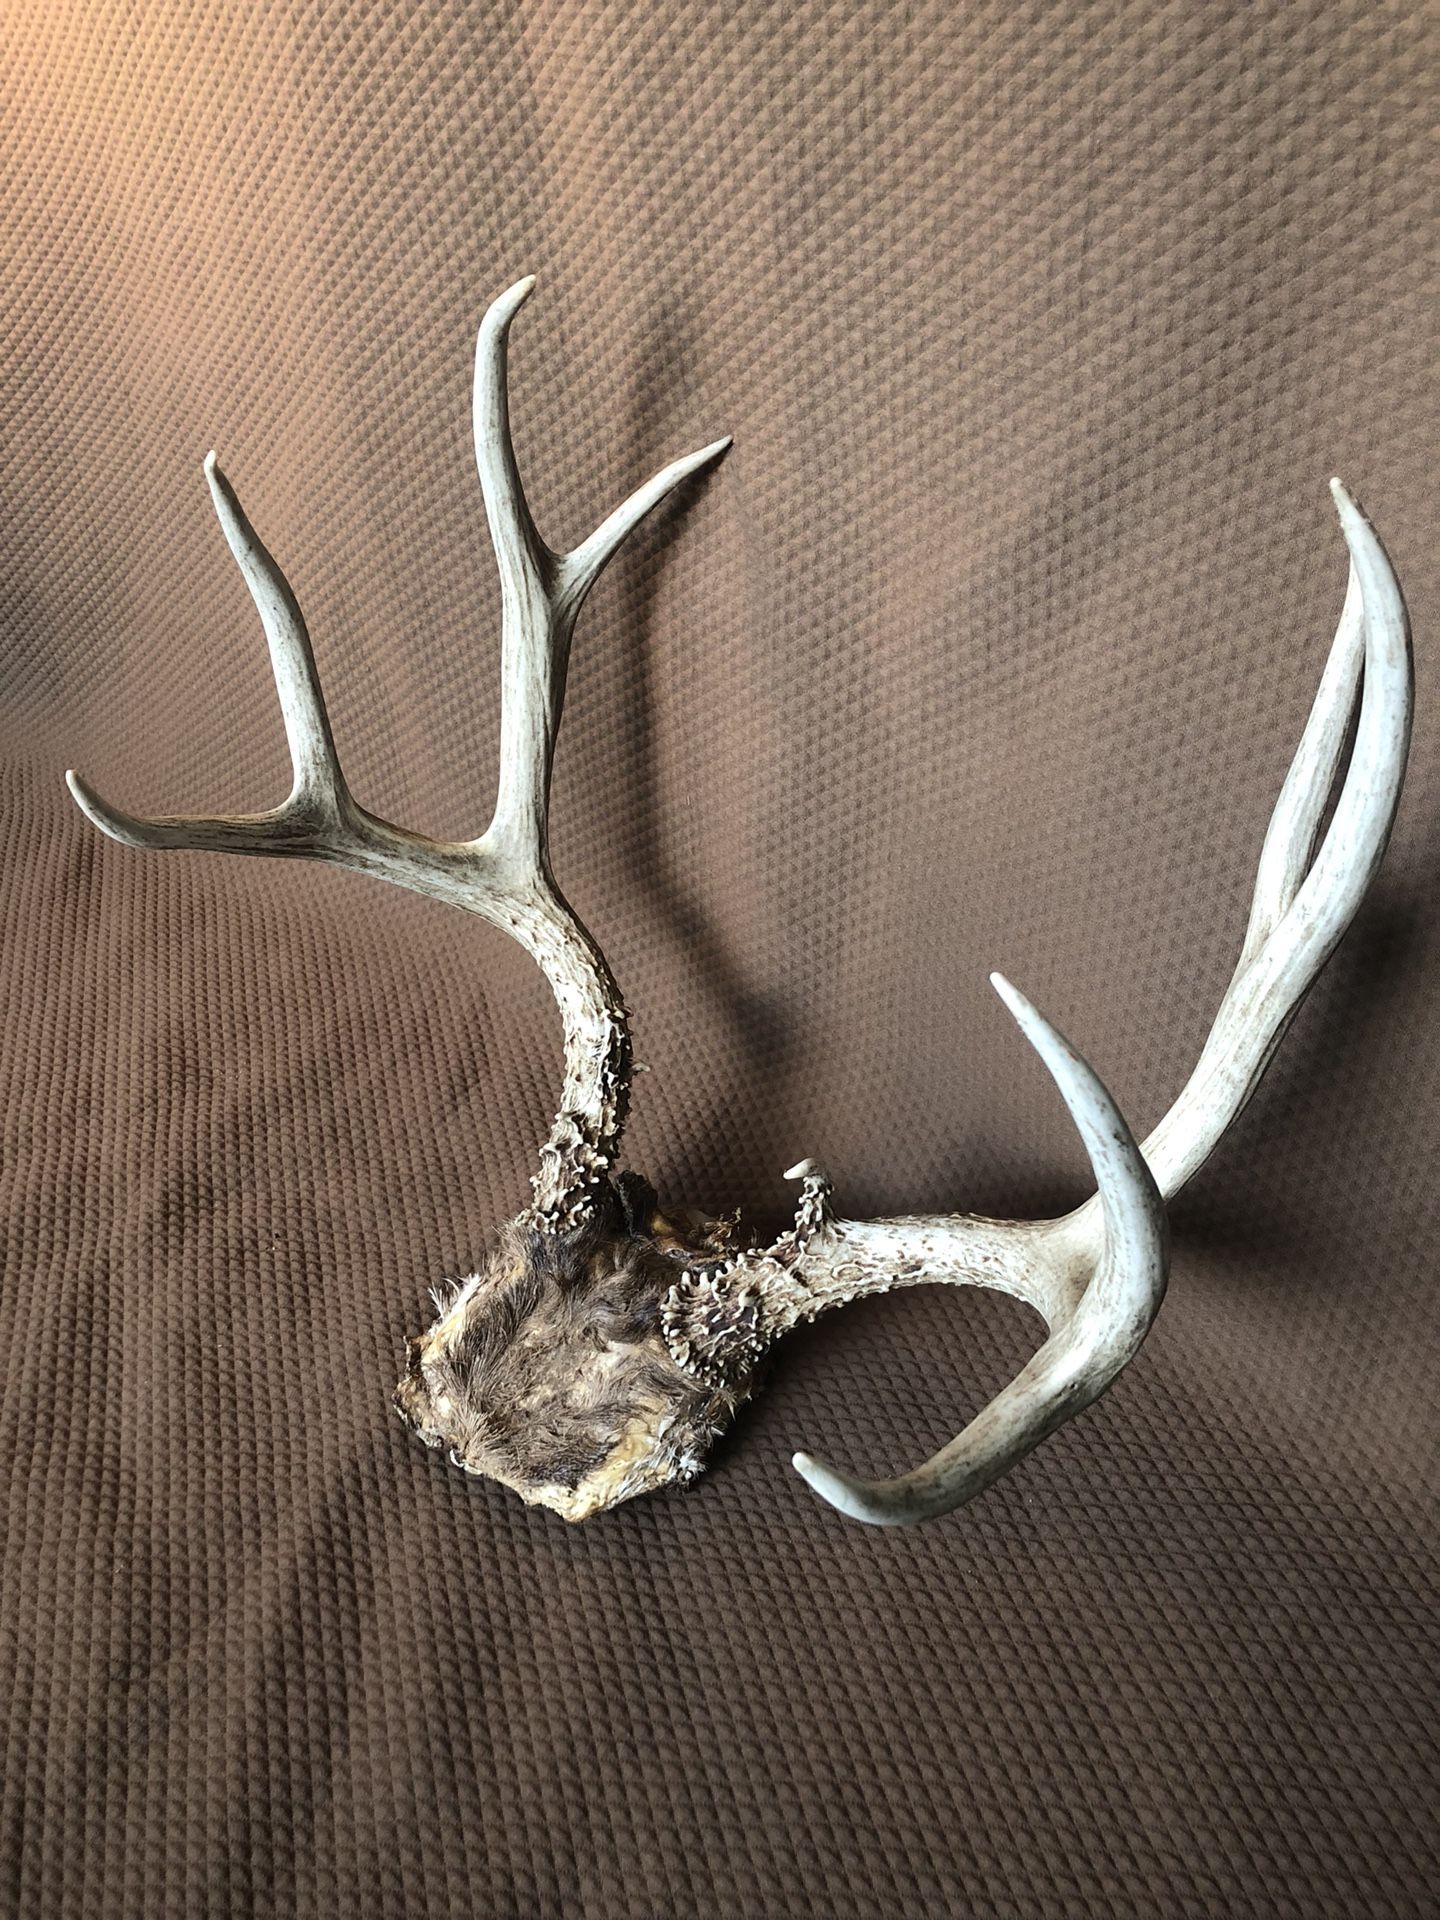 4x4 partial deer skull with hide